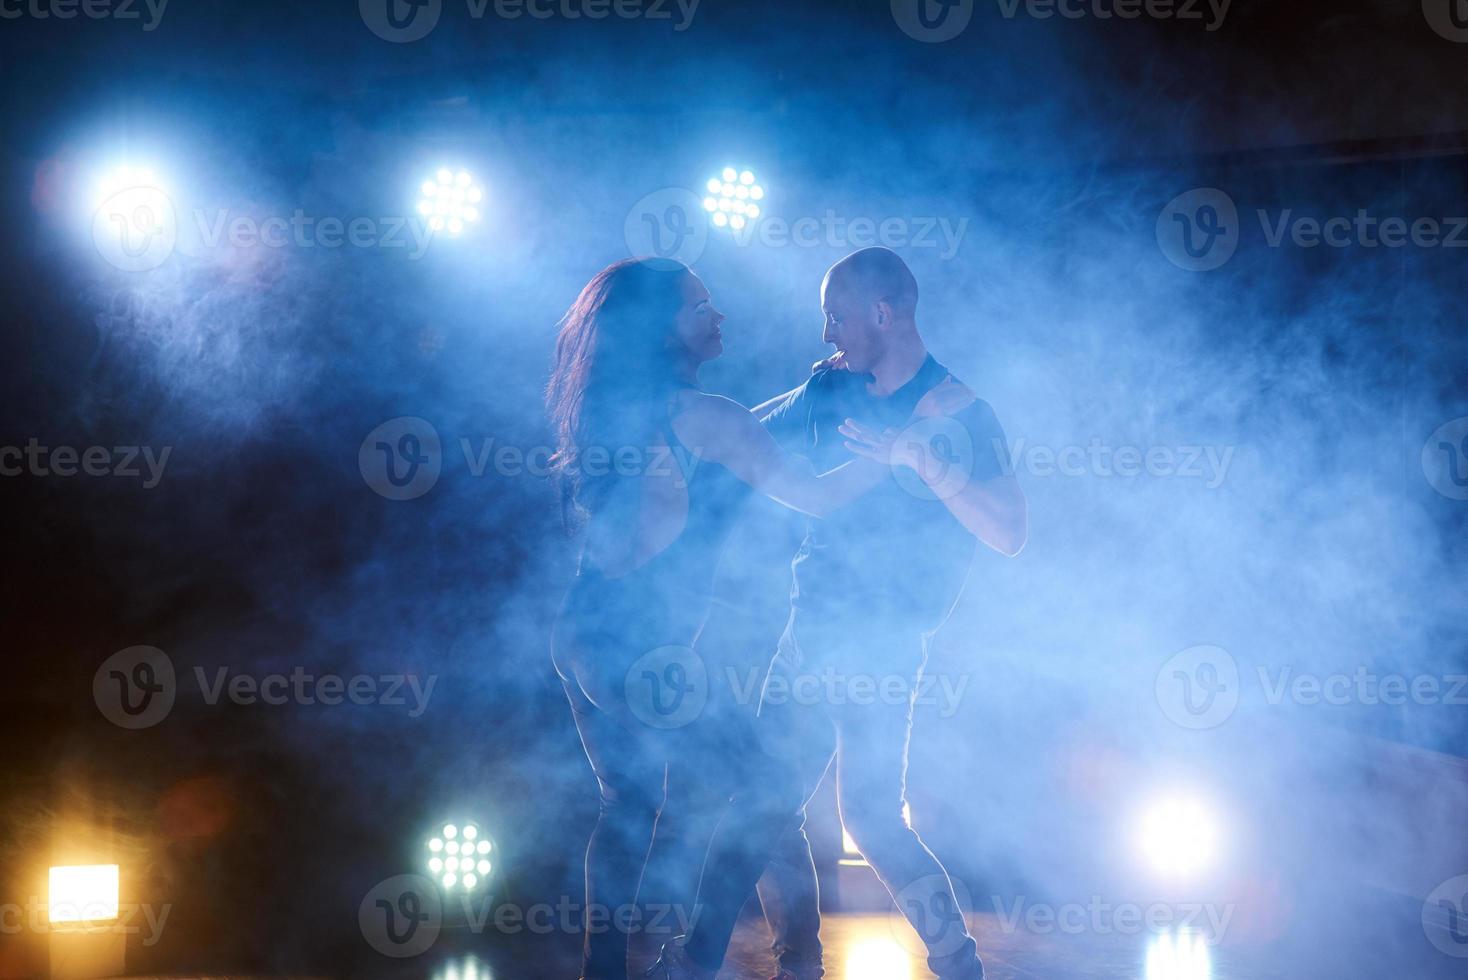 skickliga dansare som uppträder i det mörka rummet under konsertens ljus och rök. sensuellt par som utför en konstnärlig och känslomässig samtida dans foto